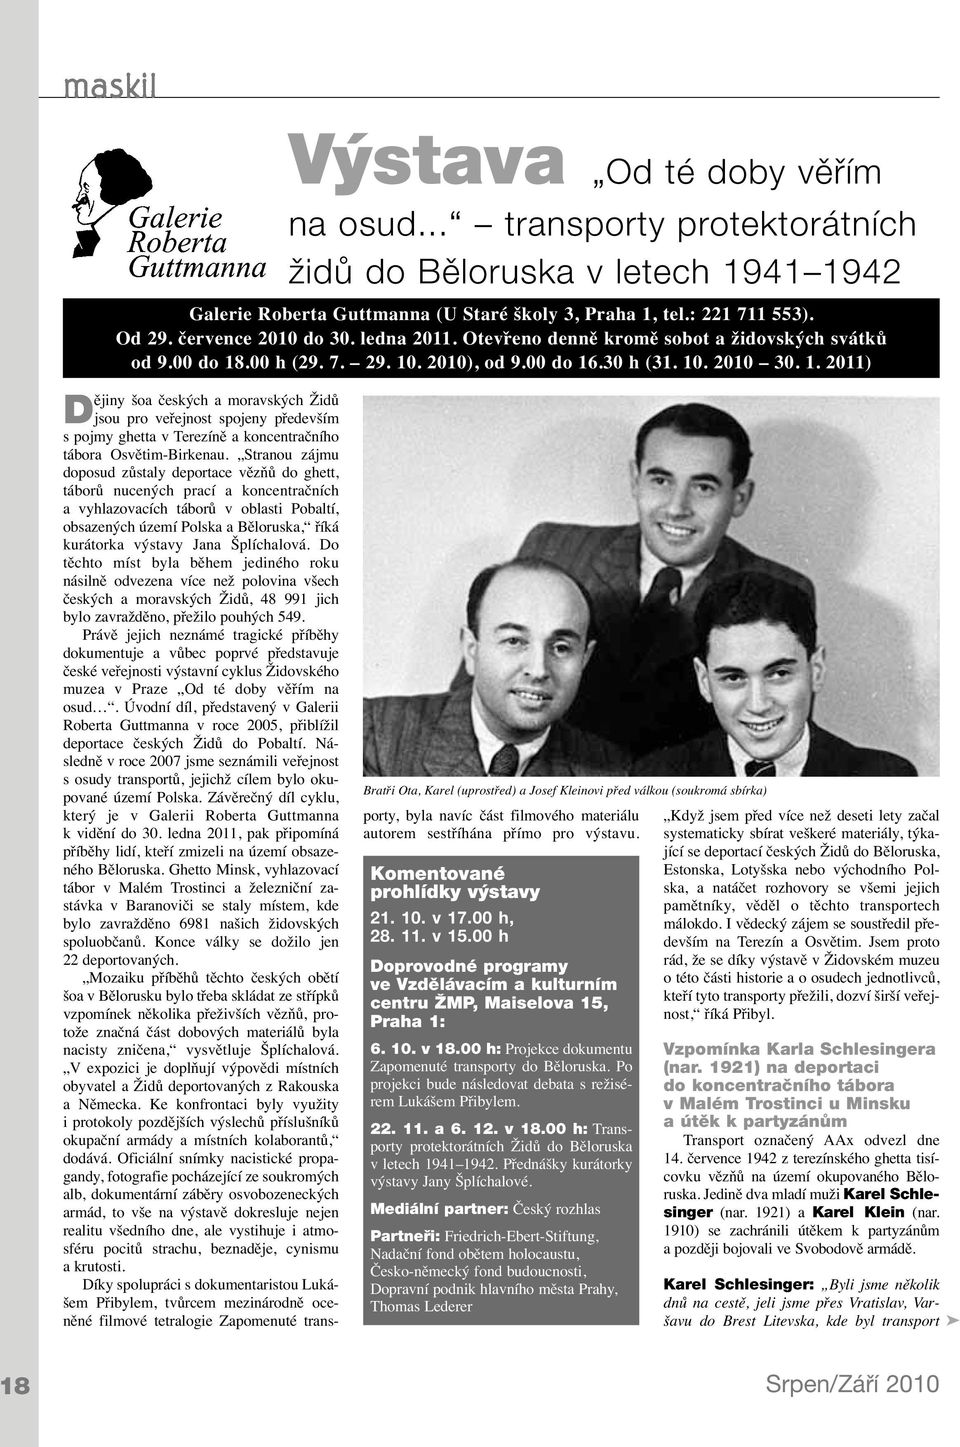 .. transporty protektorátních židů do Běloruska v letech 1941 1942 Bratři Ota, Karel (uprostřed) a Josef Kleinovi před válkou (soukromá sbírka) Dějiny šoa českých a moravských Židů jsou pro veřejnost